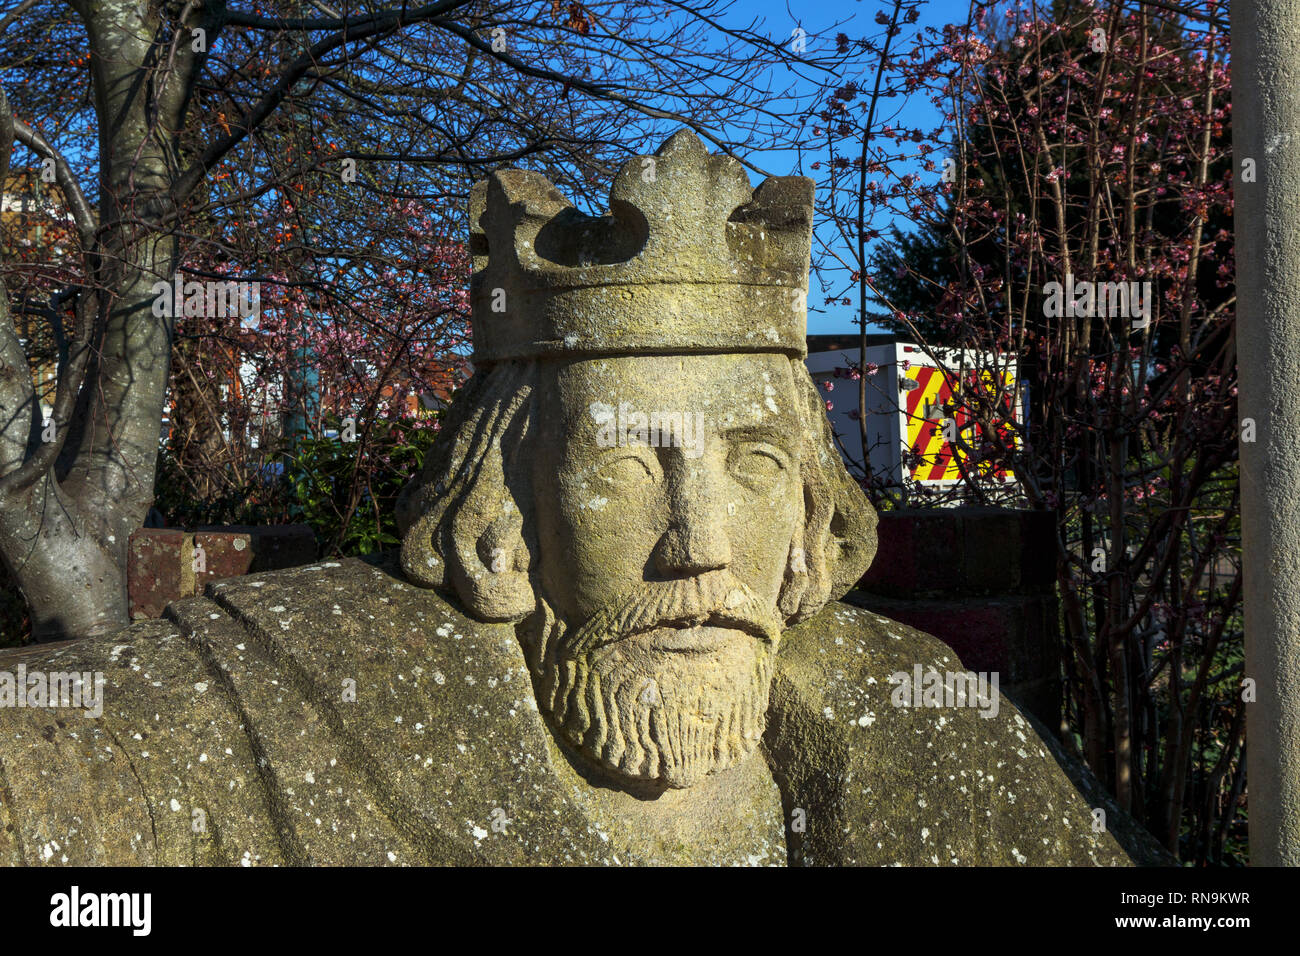 Kopf von König John auf eine Skulptur von David Parfitt, Egham, einer Stadt in Runnymede, Surrey, Südosten, England, Grossbritannien, wo die Magna Carta unterzeichnet wurde. Stockfoto